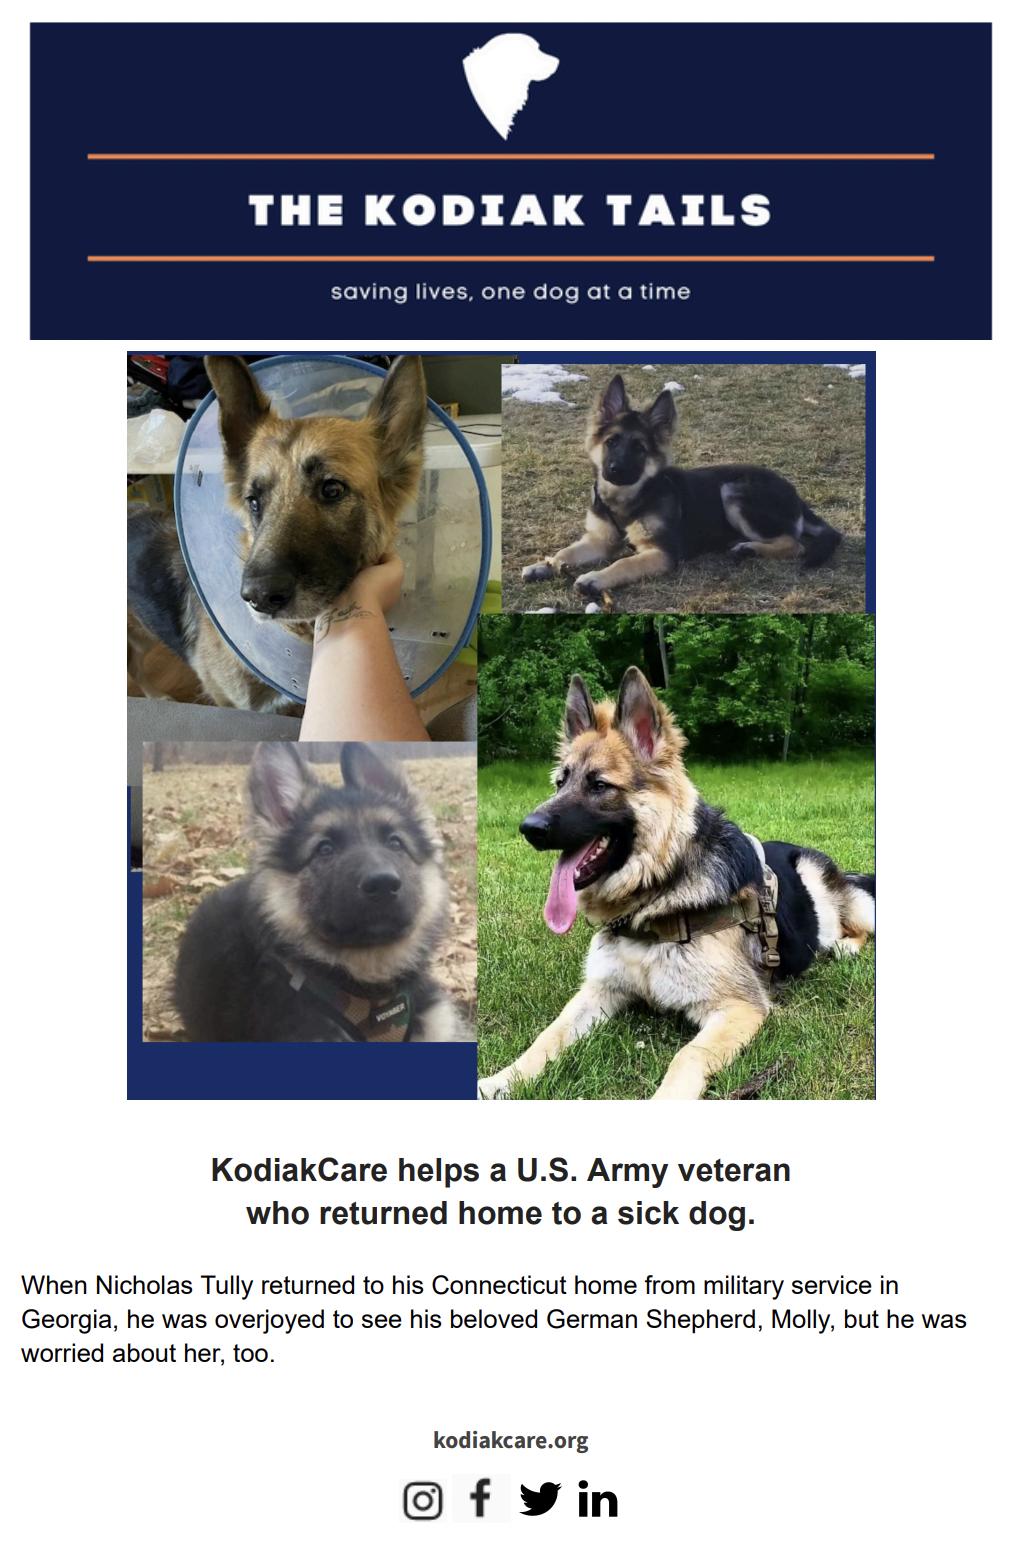 KodiakCare helps a U.S. Army veteran who returned home to a sick dog